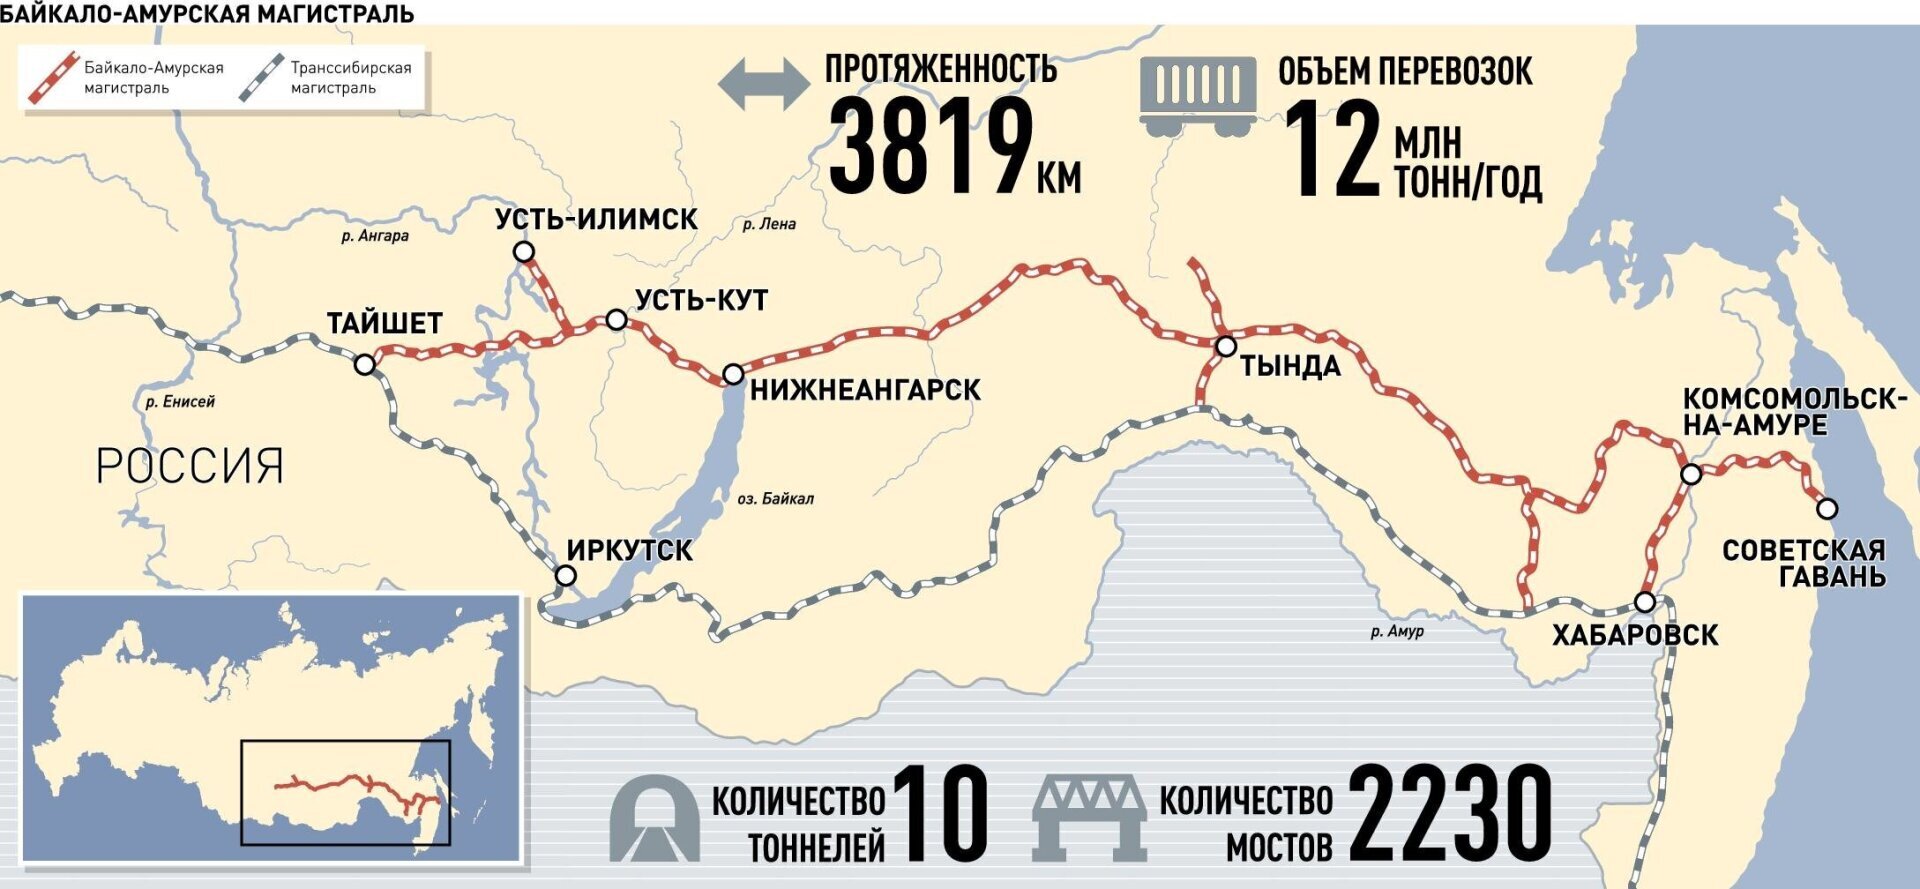 Байкало-Амурская магистраль на карте России